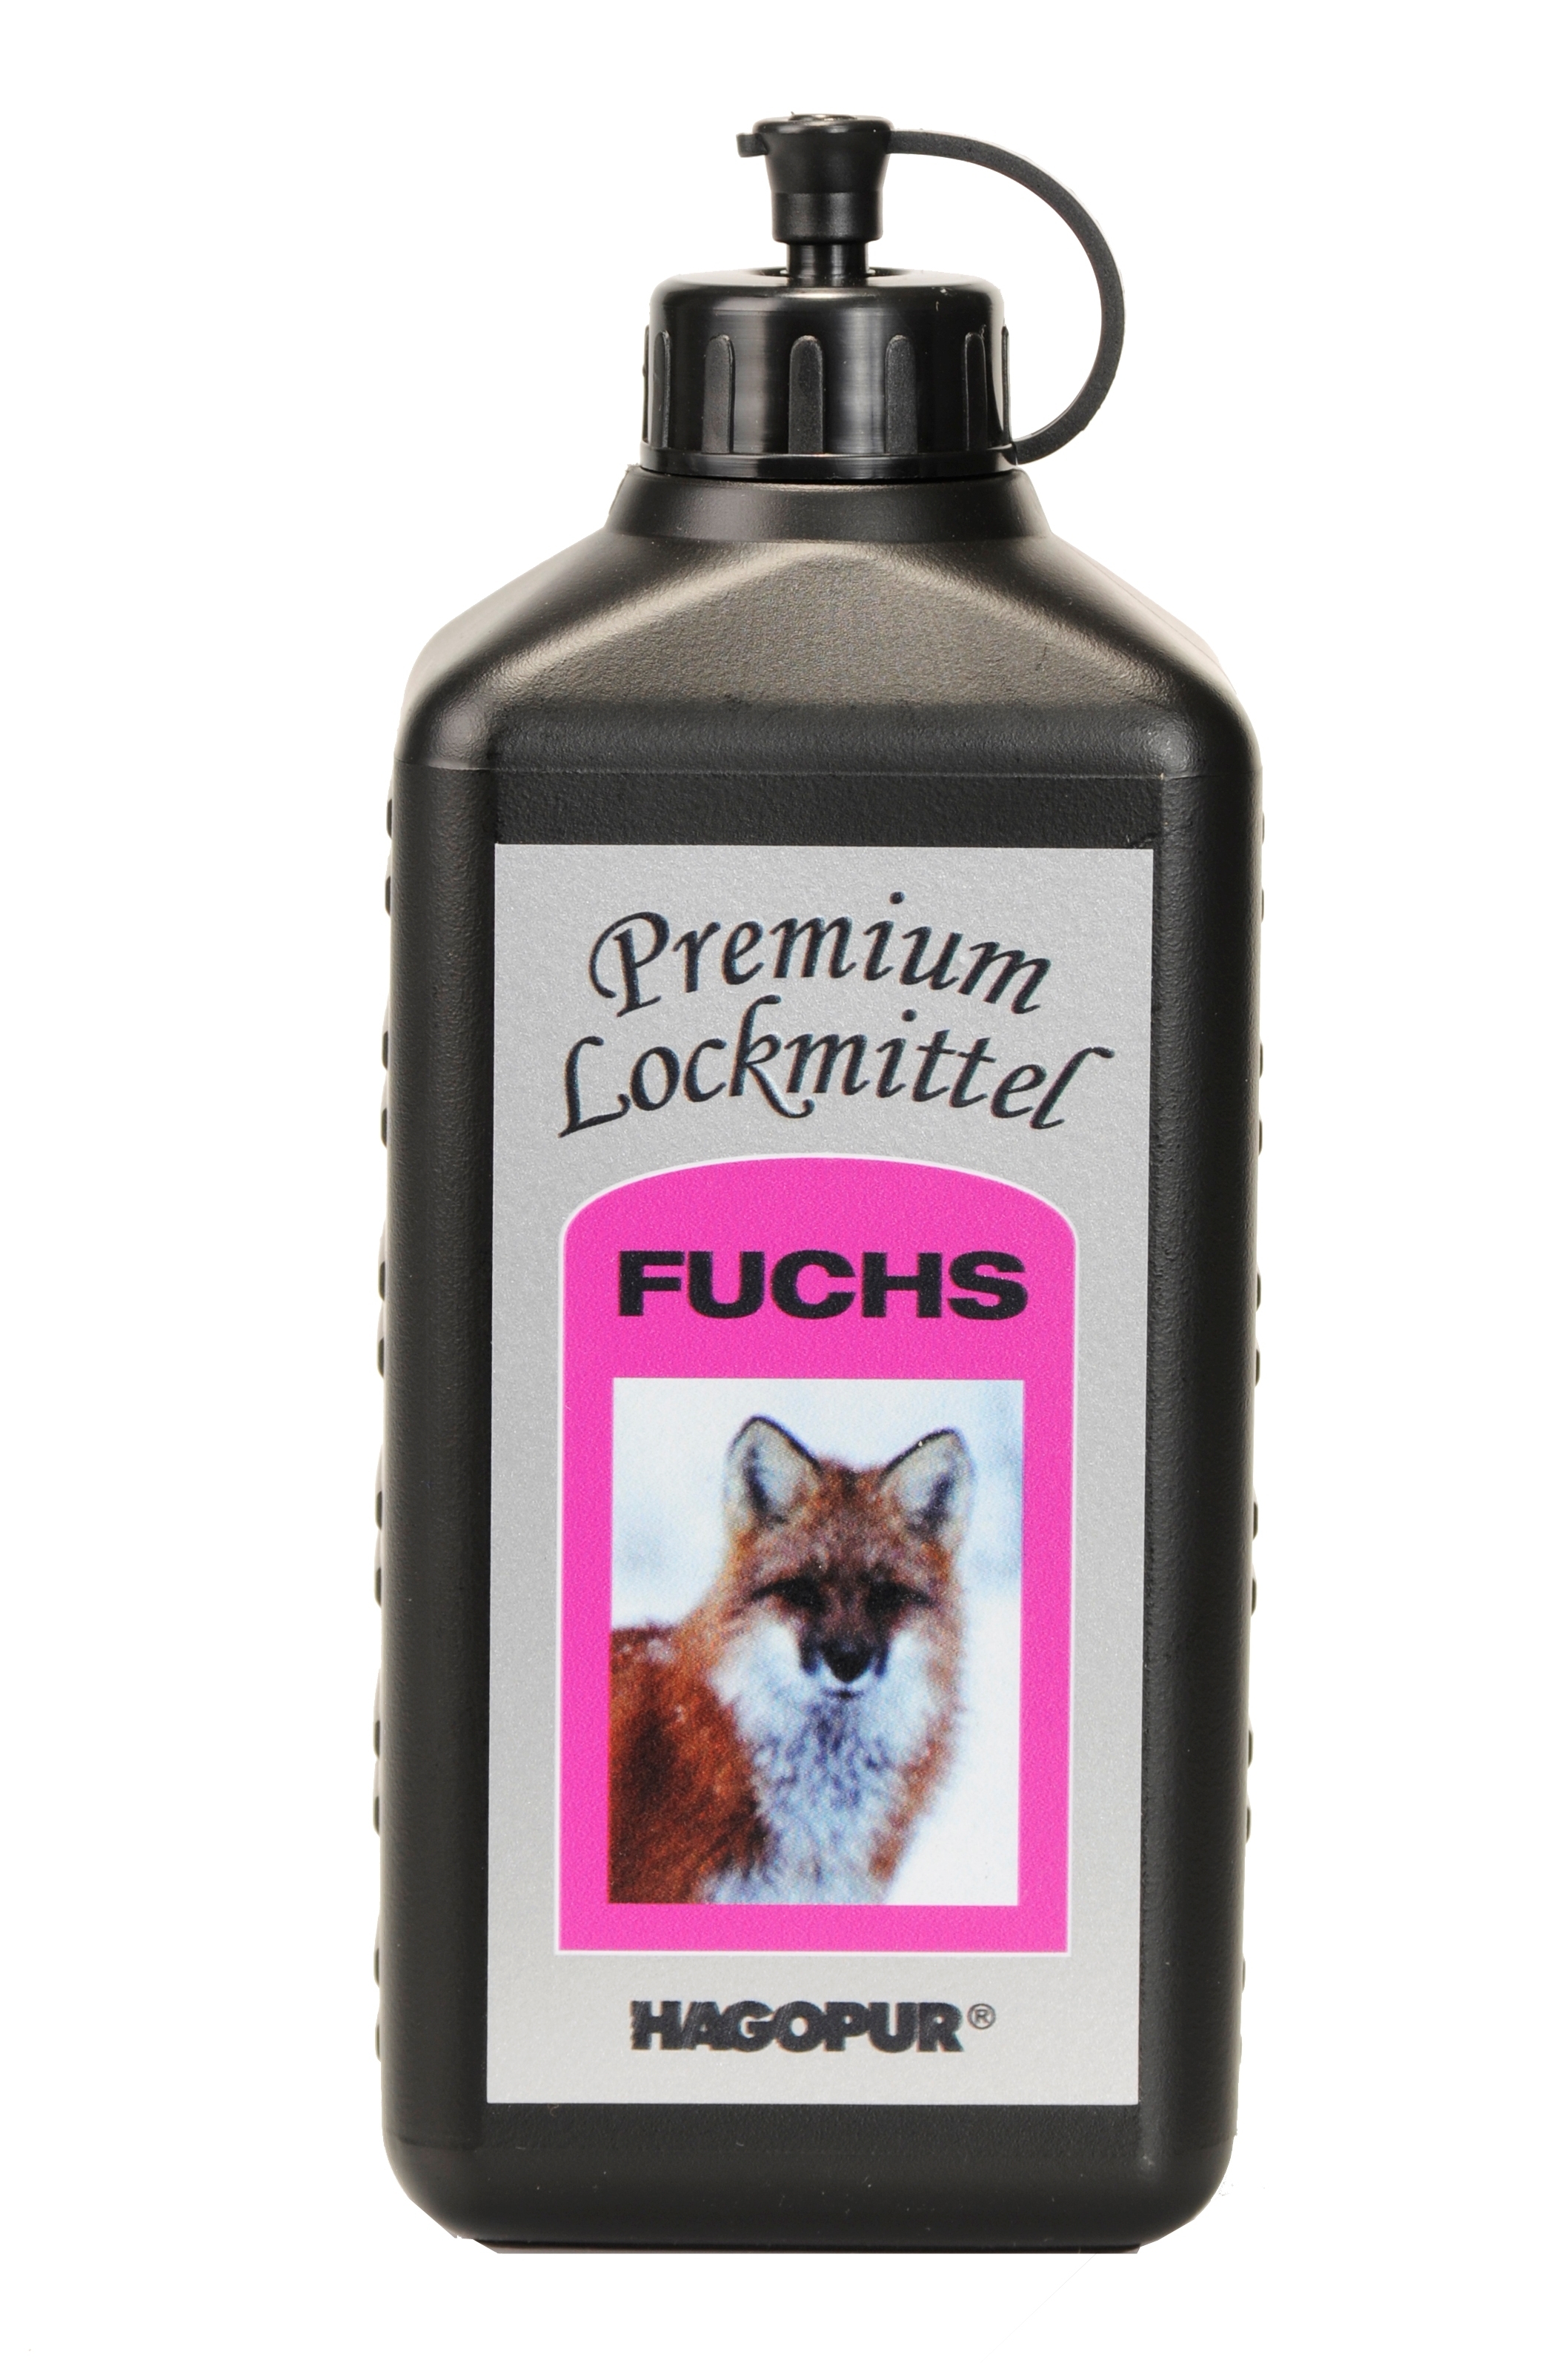 Hagopur Premium Lockmittel Fuchs 